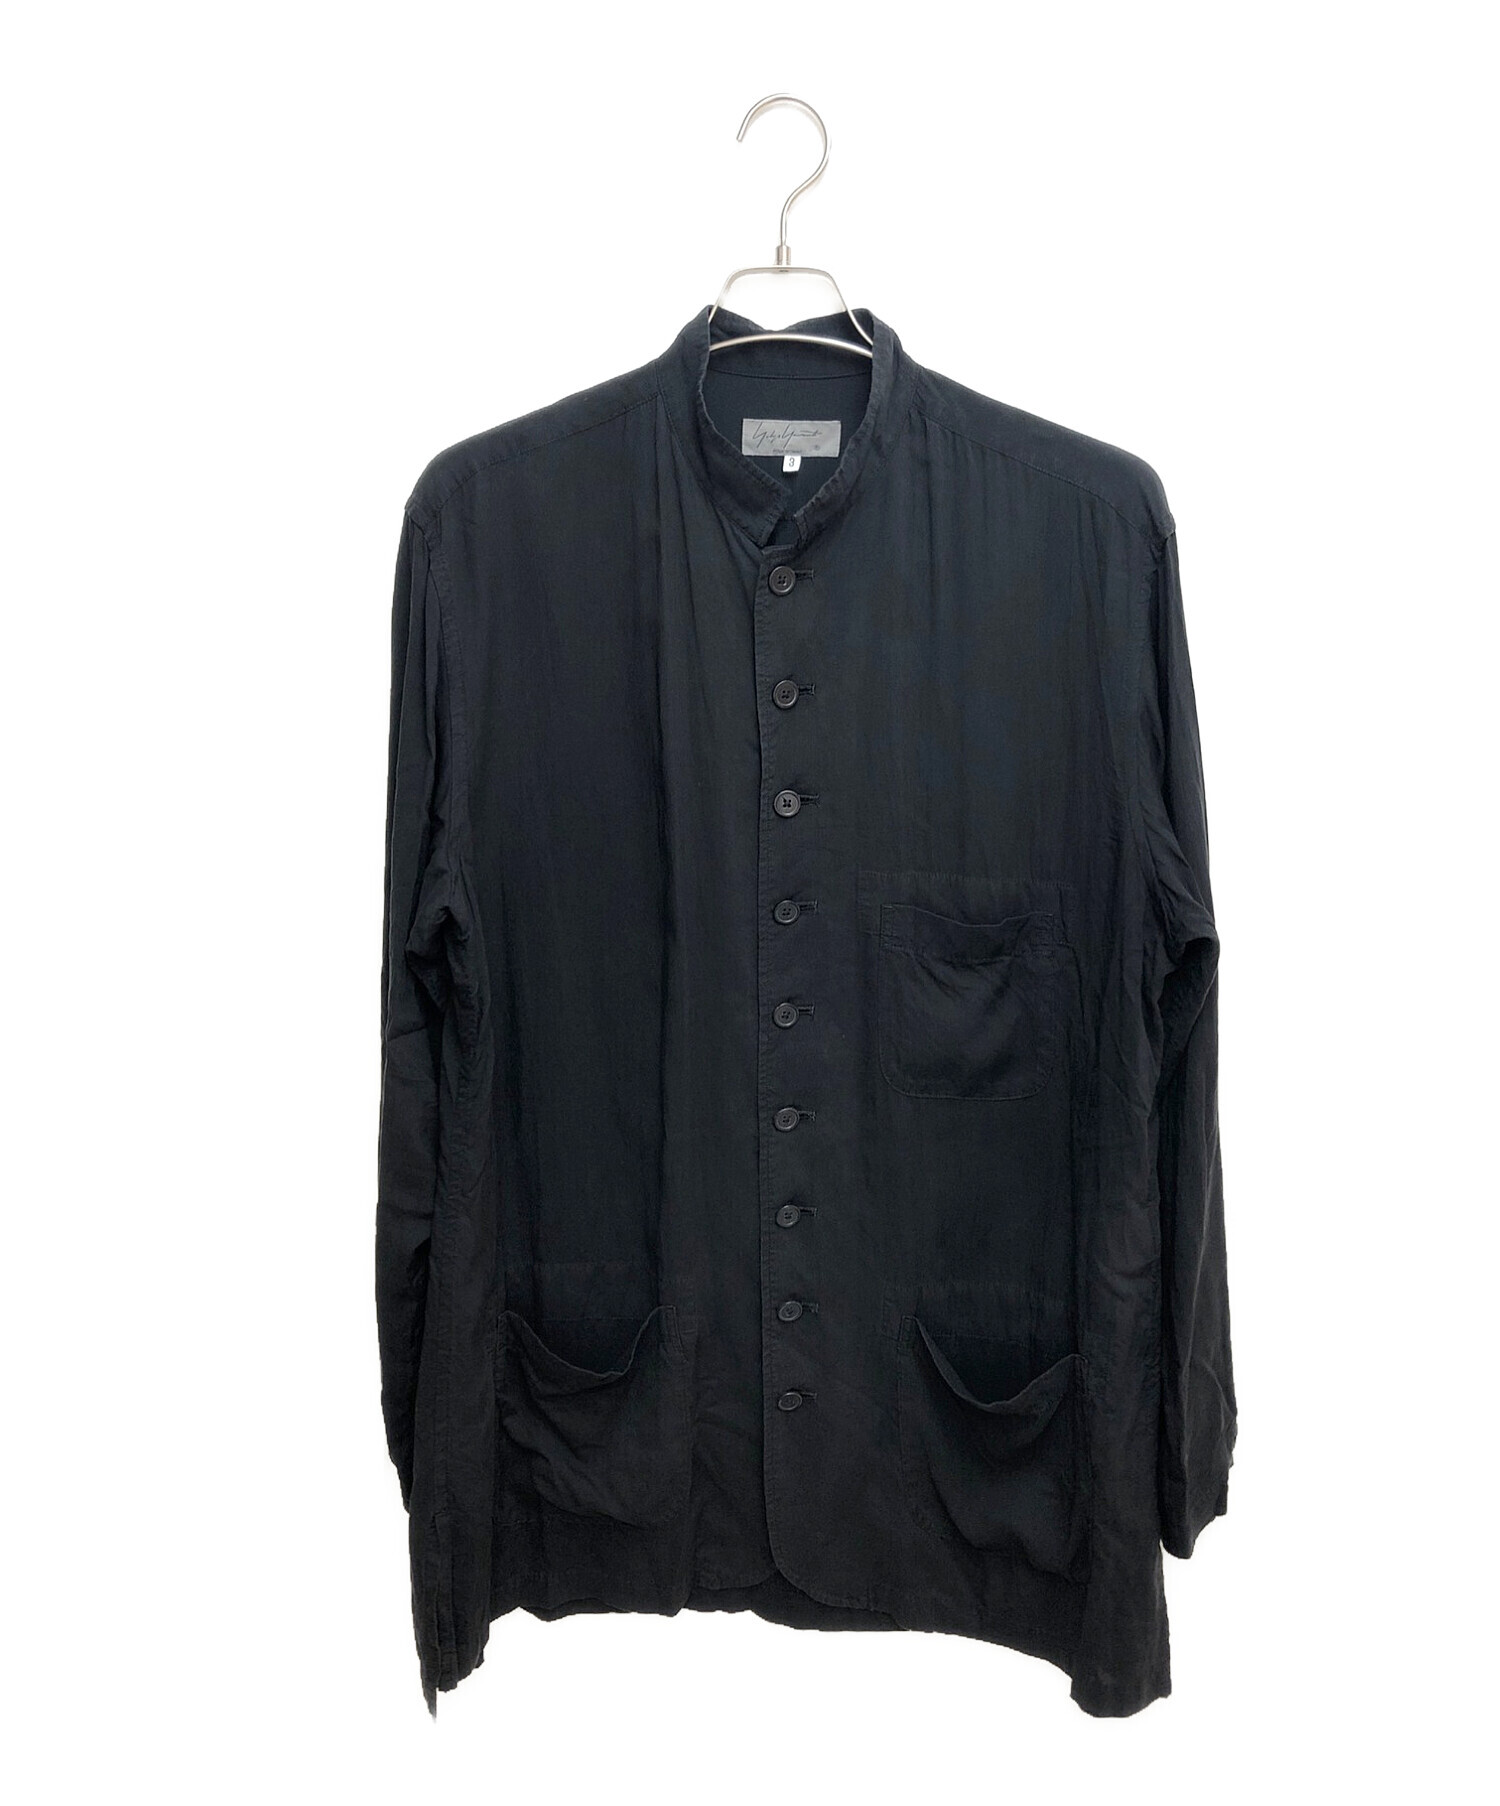 Yohji Yamamoto pour homme (ヨウジヤマモトプールオム) スタンドカラーシャツジャケット ブラック サイズ:3